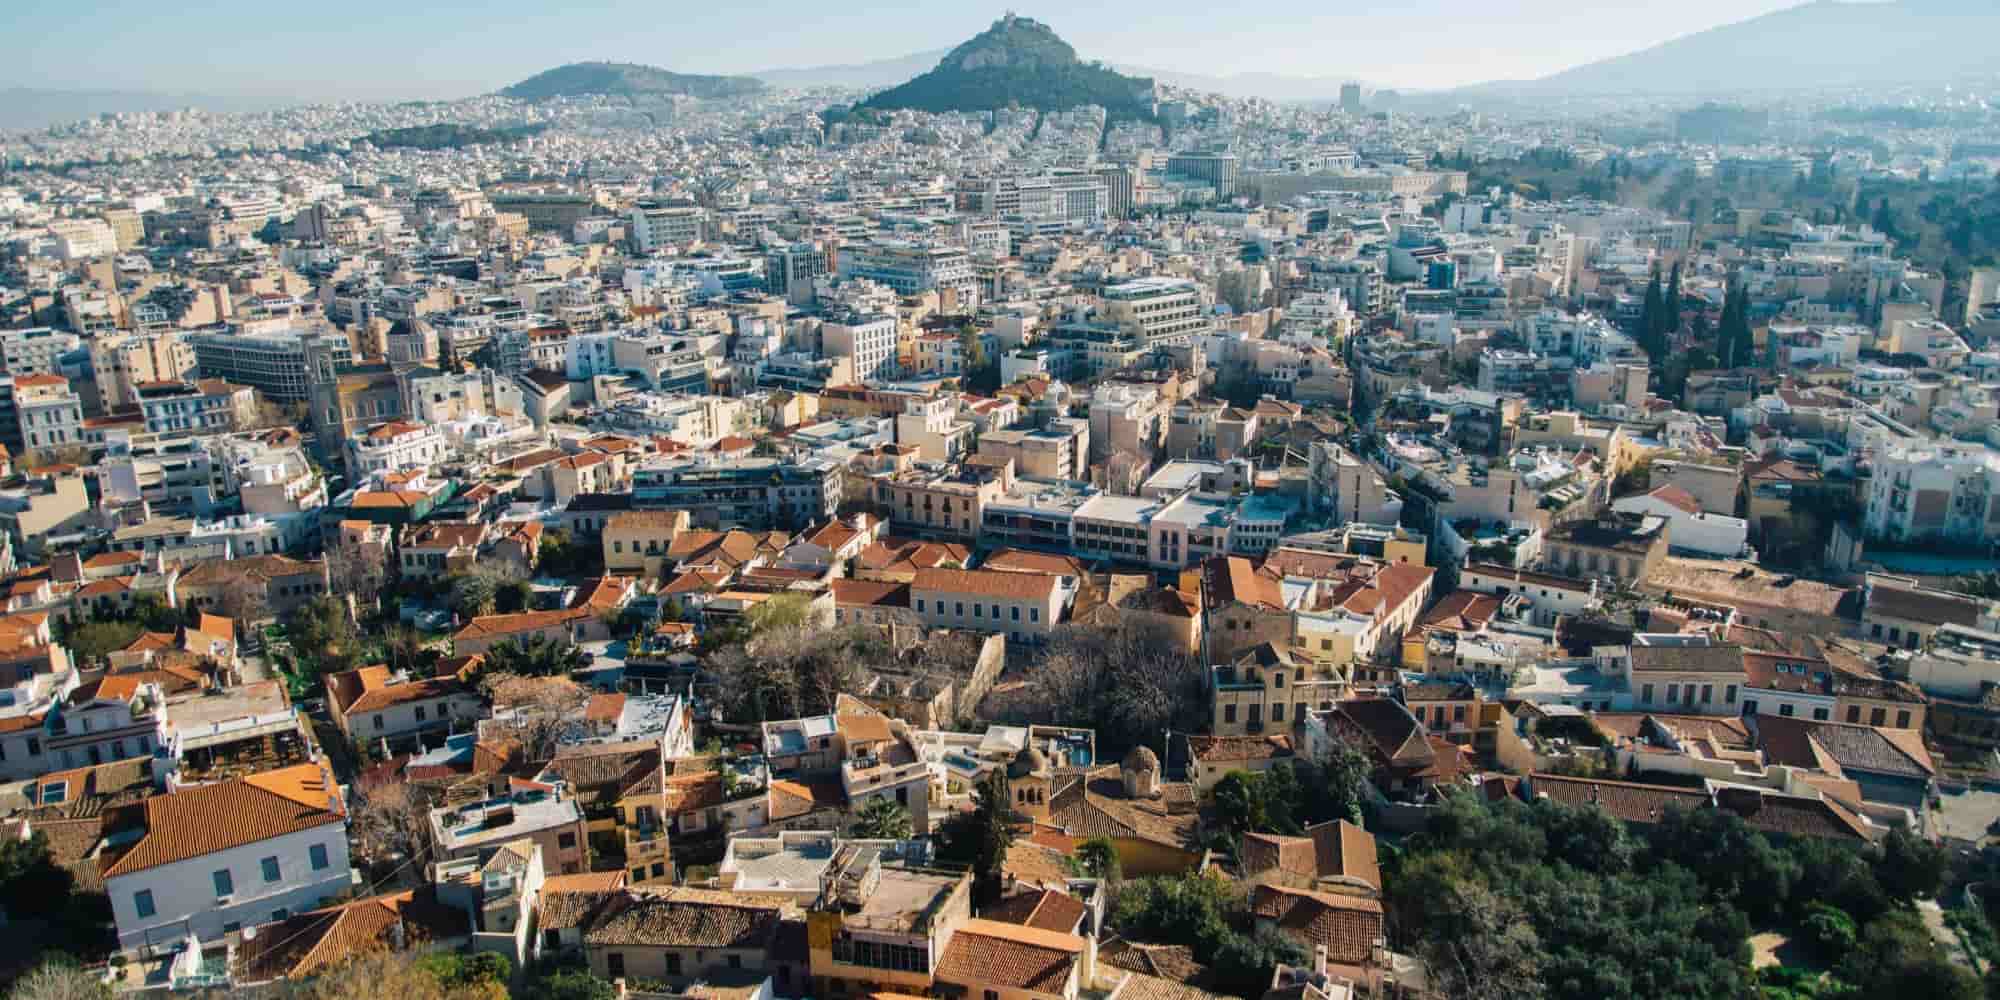 Δήμος Αθηναίων: Στις 9 και 10 Μαΐου το 8ο Travel Trade Athens